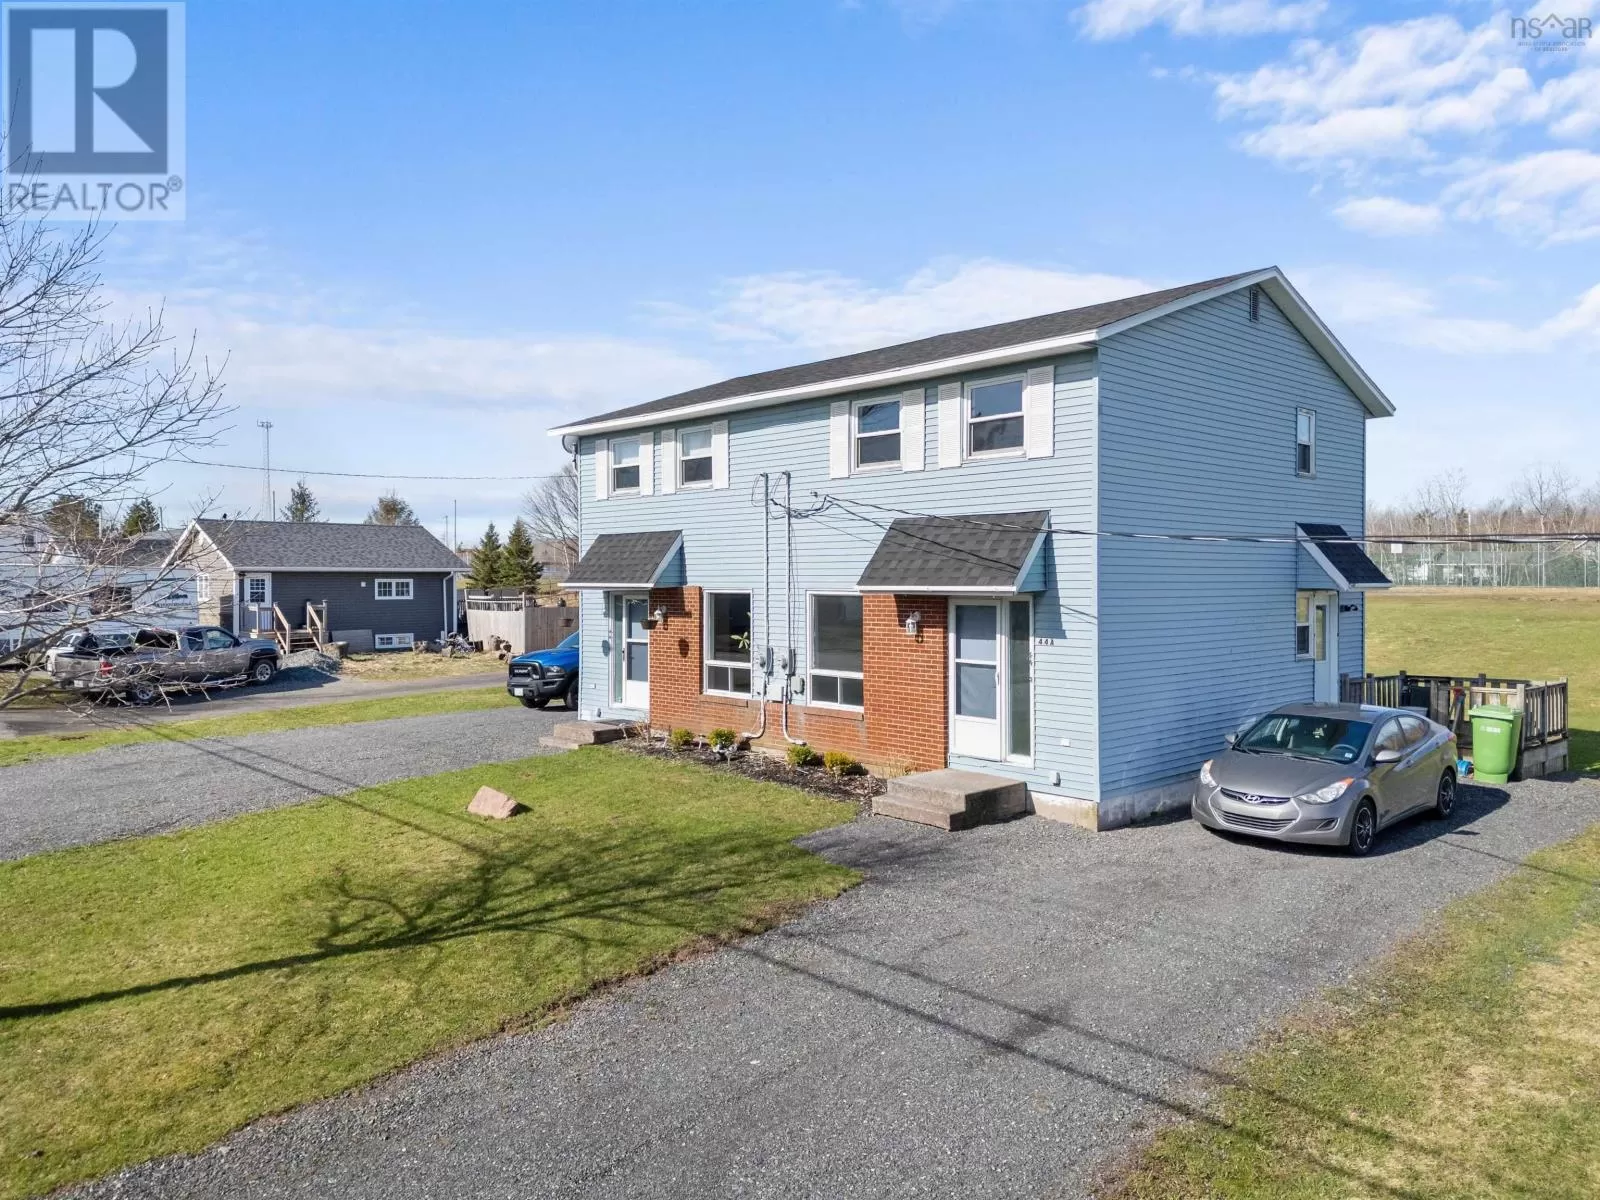 Duplex for rent: 44 Poplar Street, Stellarton, Nova Scotia B0K 1S0